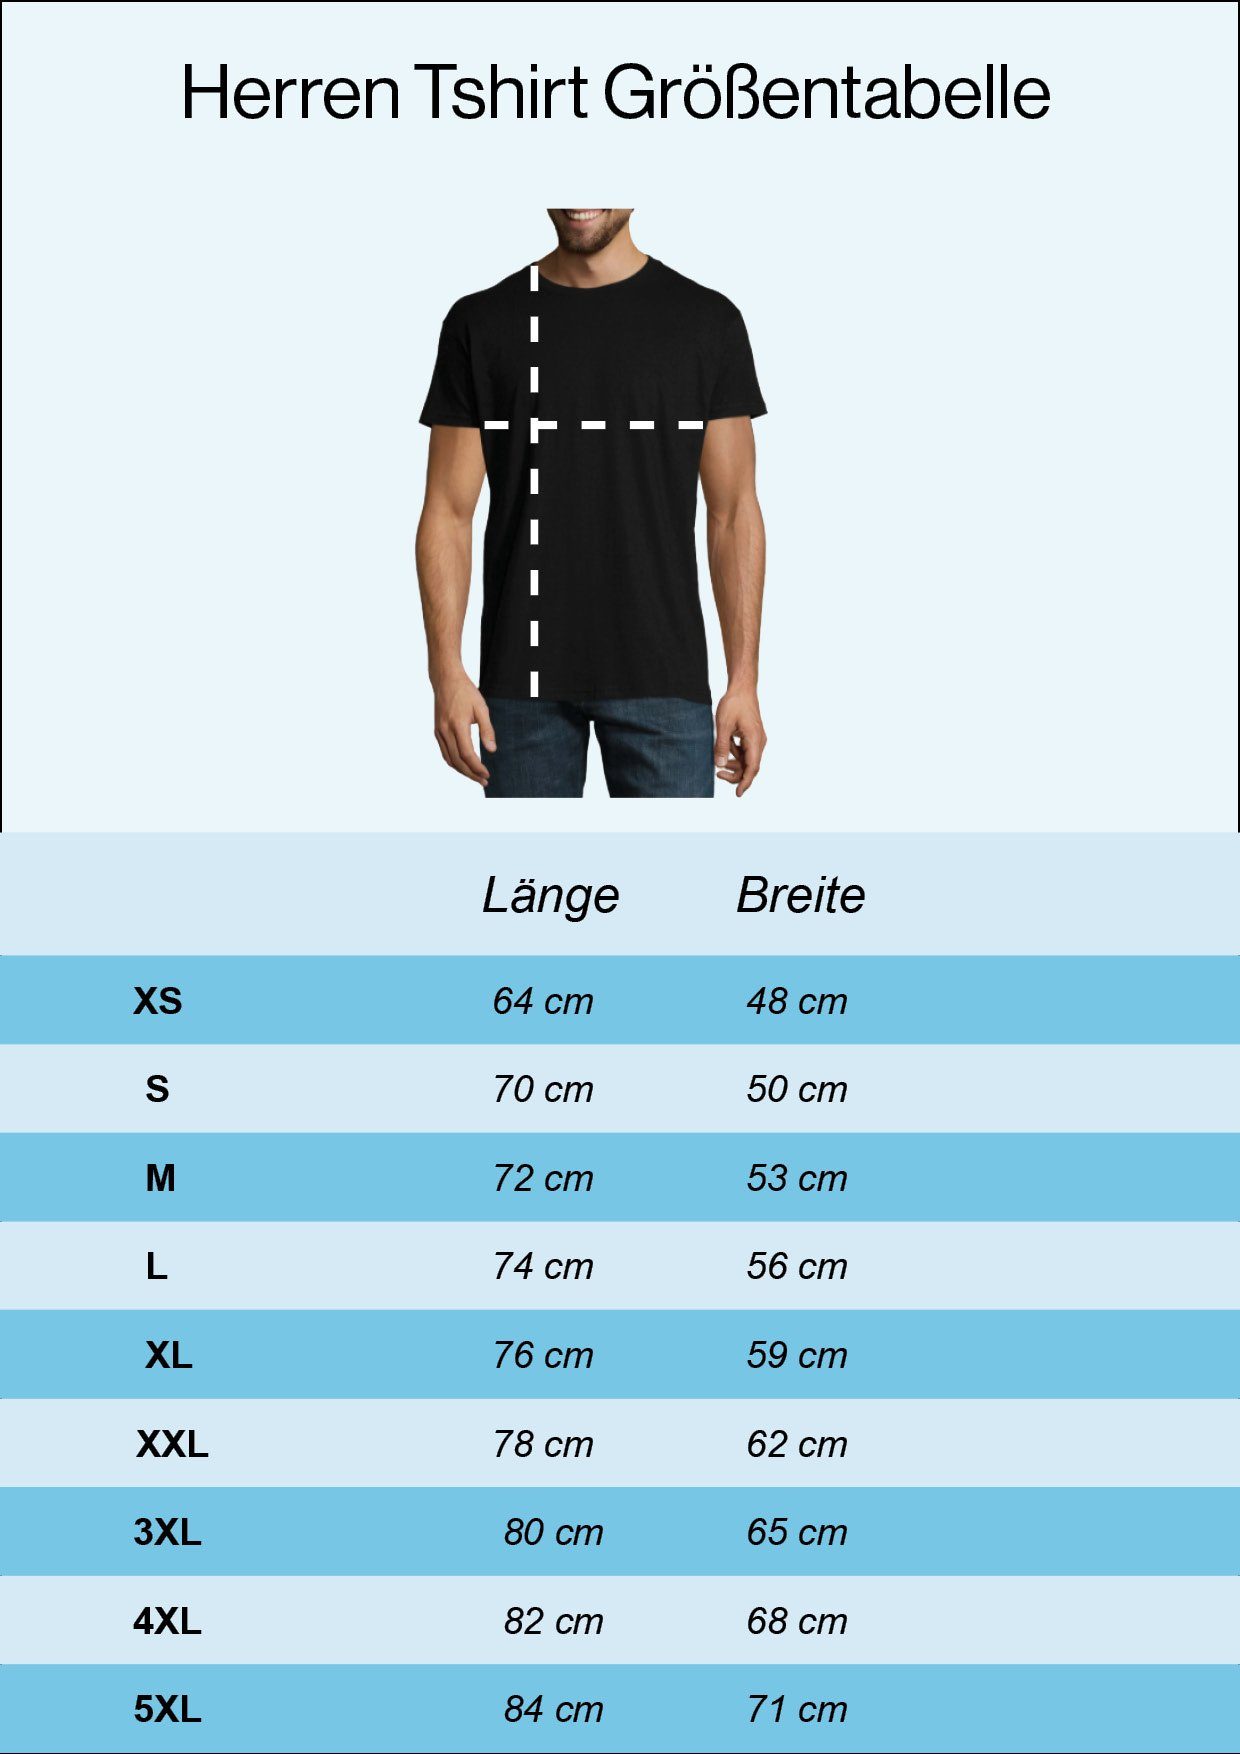 lustigem Frontprint Herren Fahrrad Designz mit Youth T-Shirt Fahrrad Schwarz Heartbeat Shirt